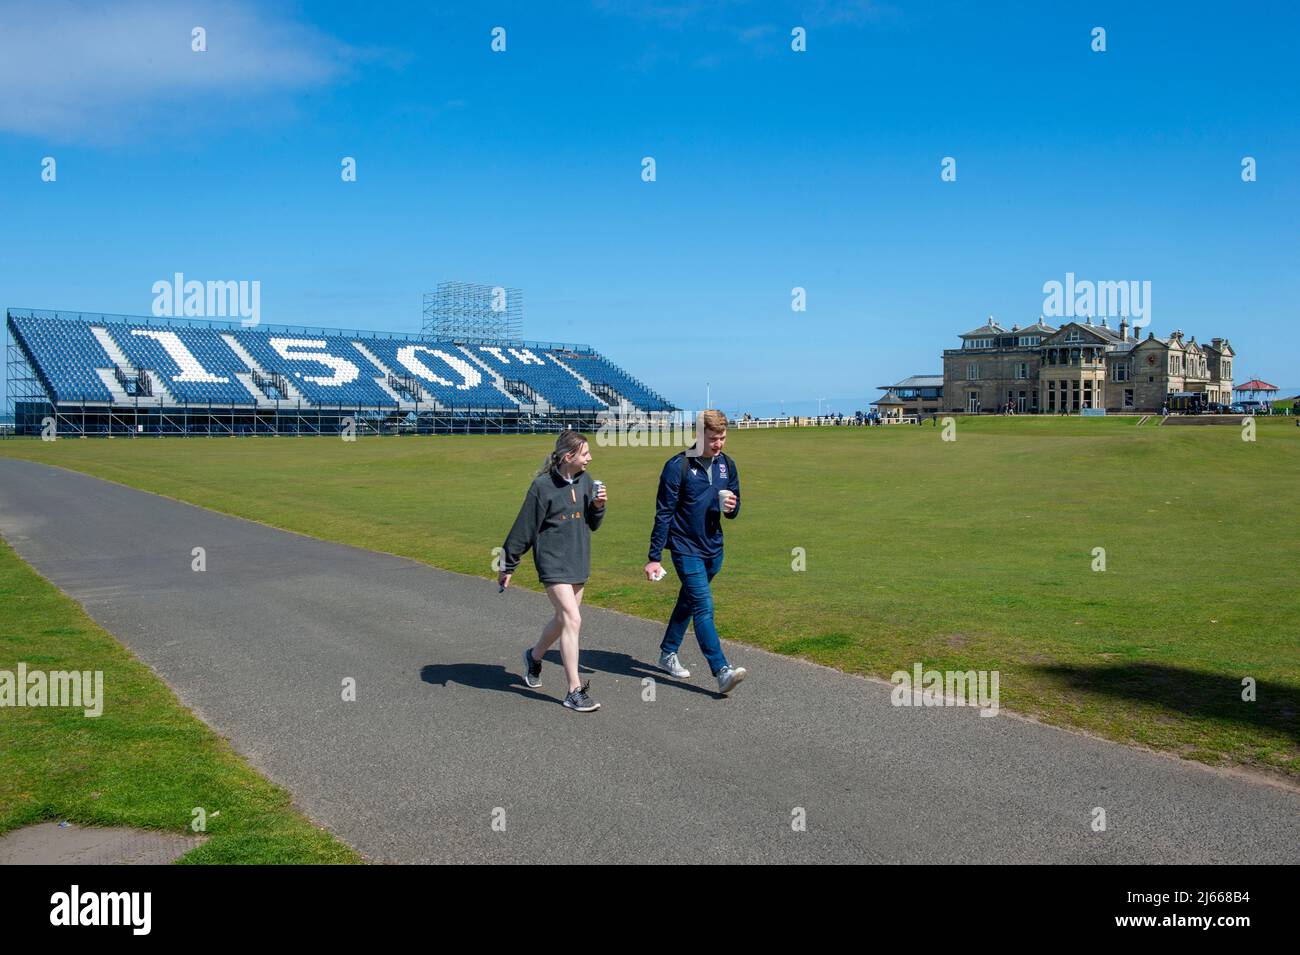 Temporalmente está en marcha para el torneo Open Golf 150th que se jugará en julio de 2022 sobre el Old Course, St Andrews, Fife, Escocia. Foto de stock